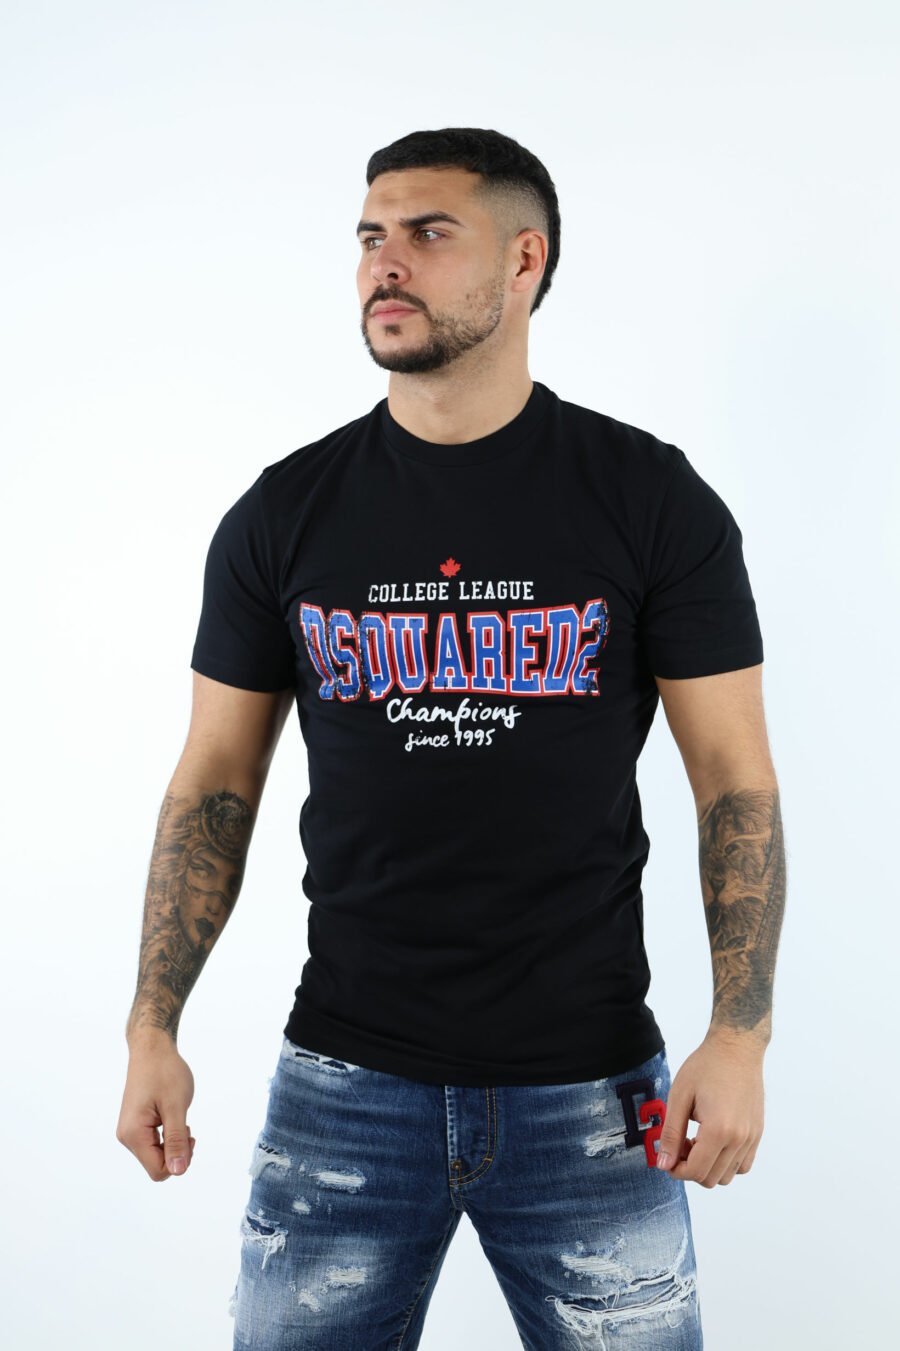 Camiseta negra con maxilogo "collegue league" - 106872